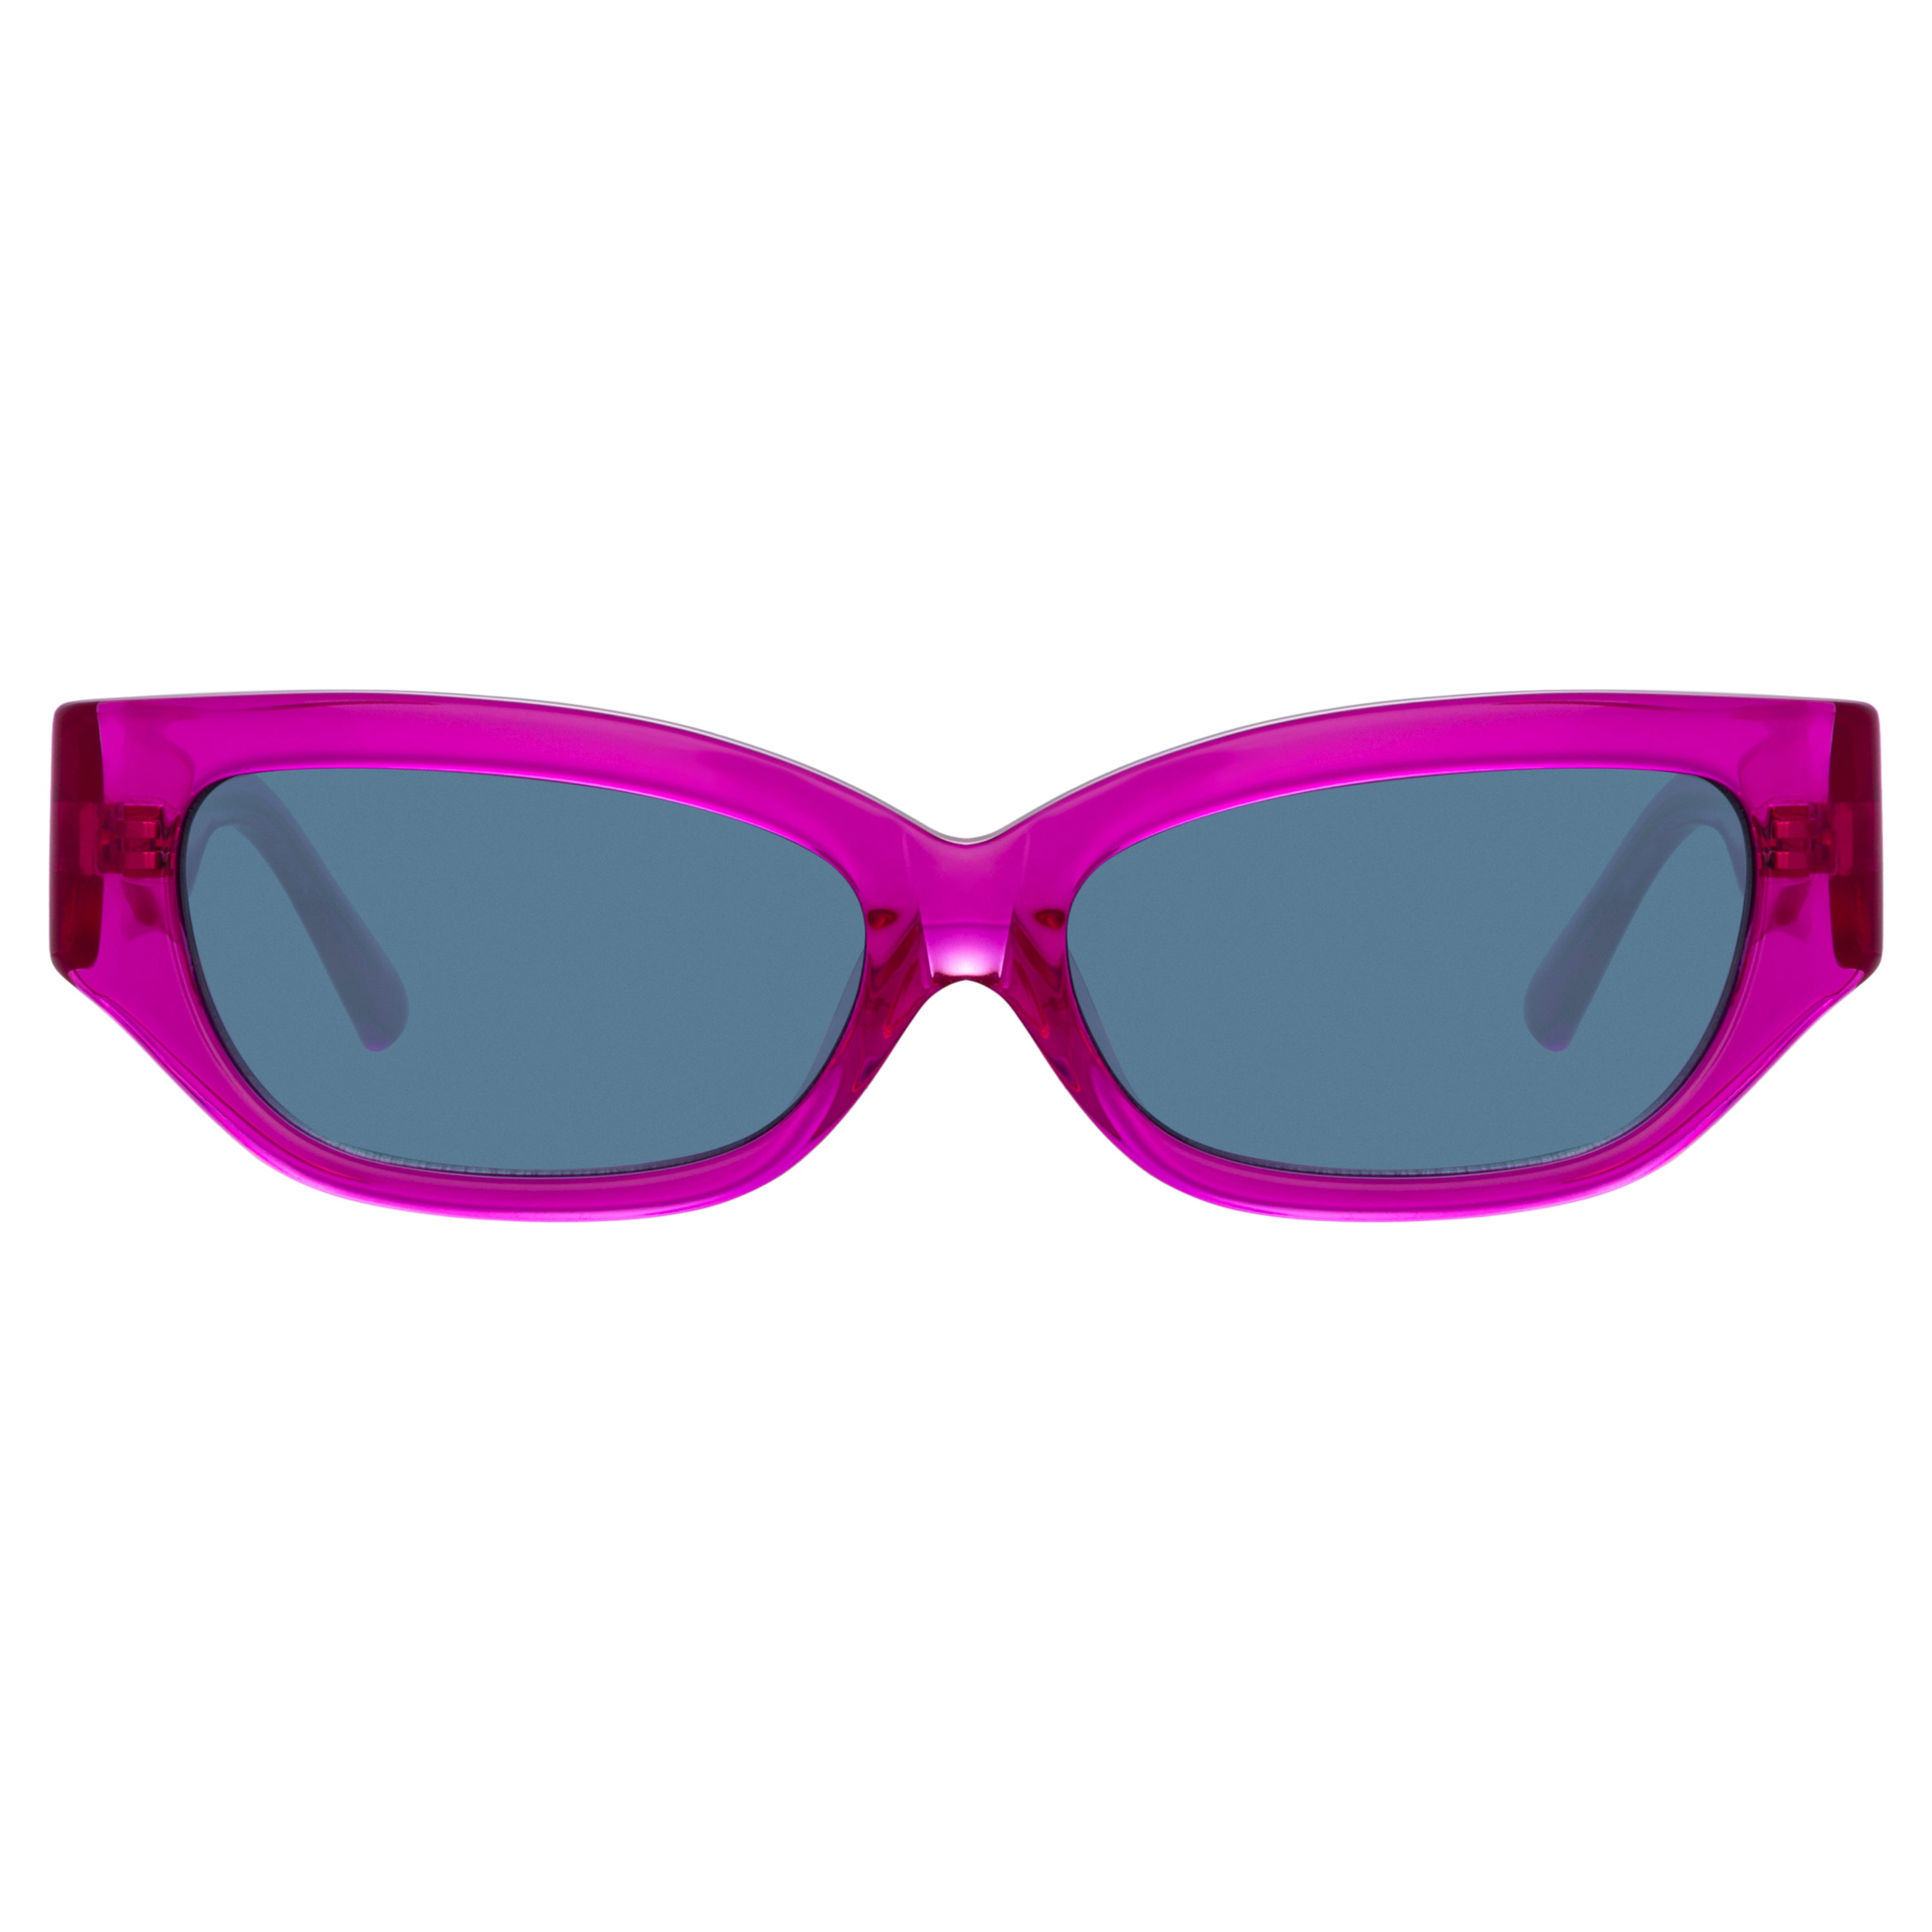 The Attico Vanessa Cat Eye Sunglasses in Fucshia